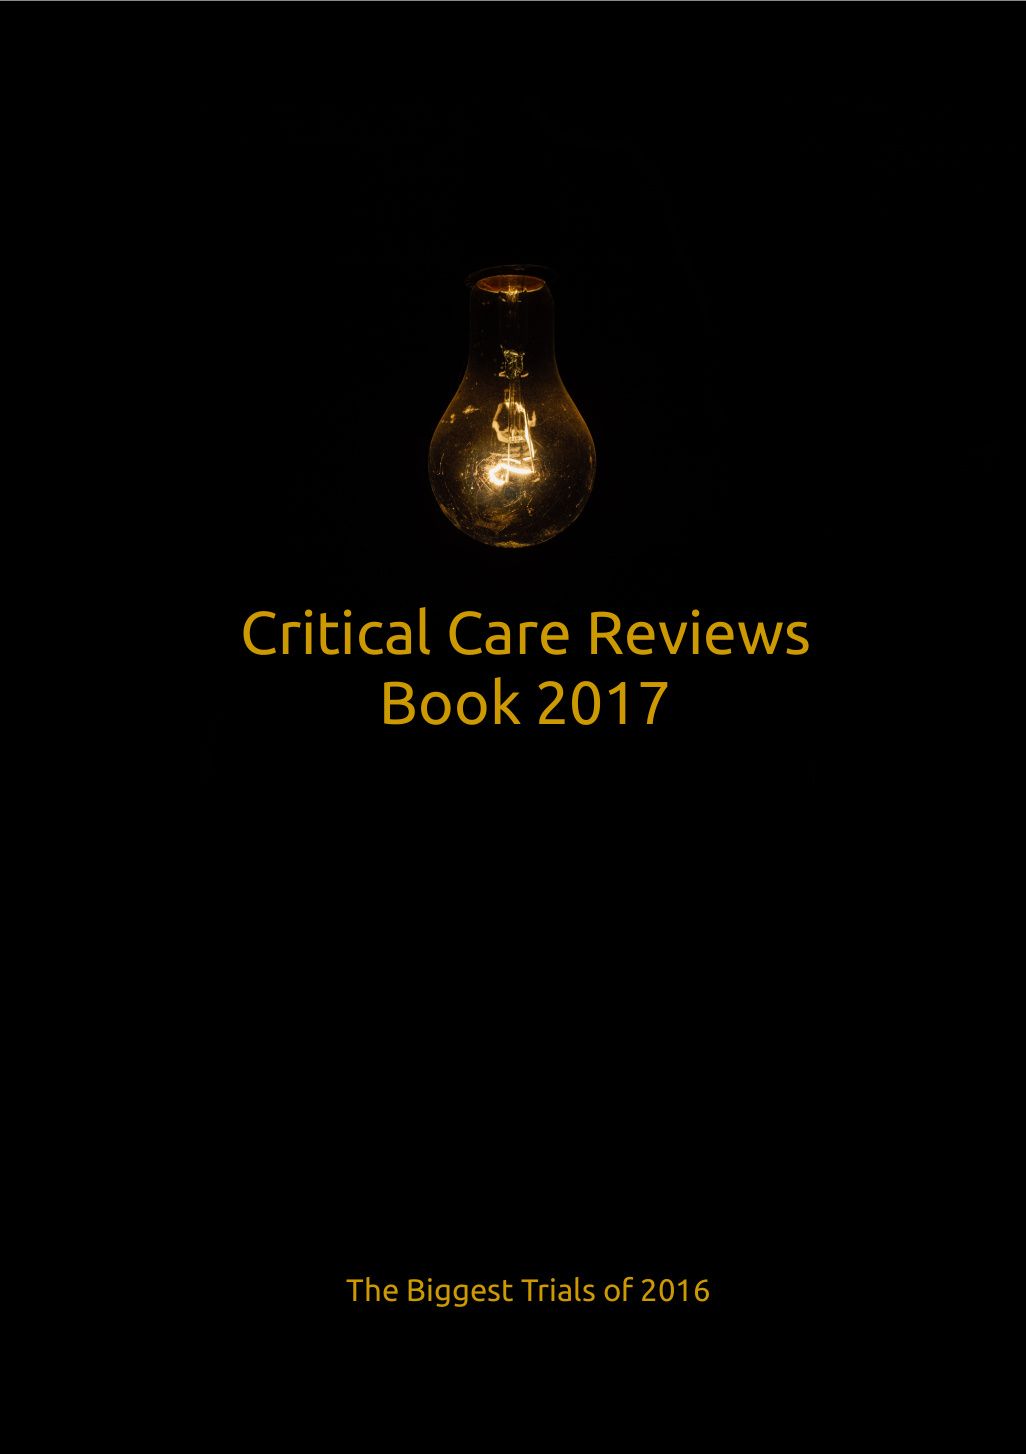 Critical Care Reviews Book 2017